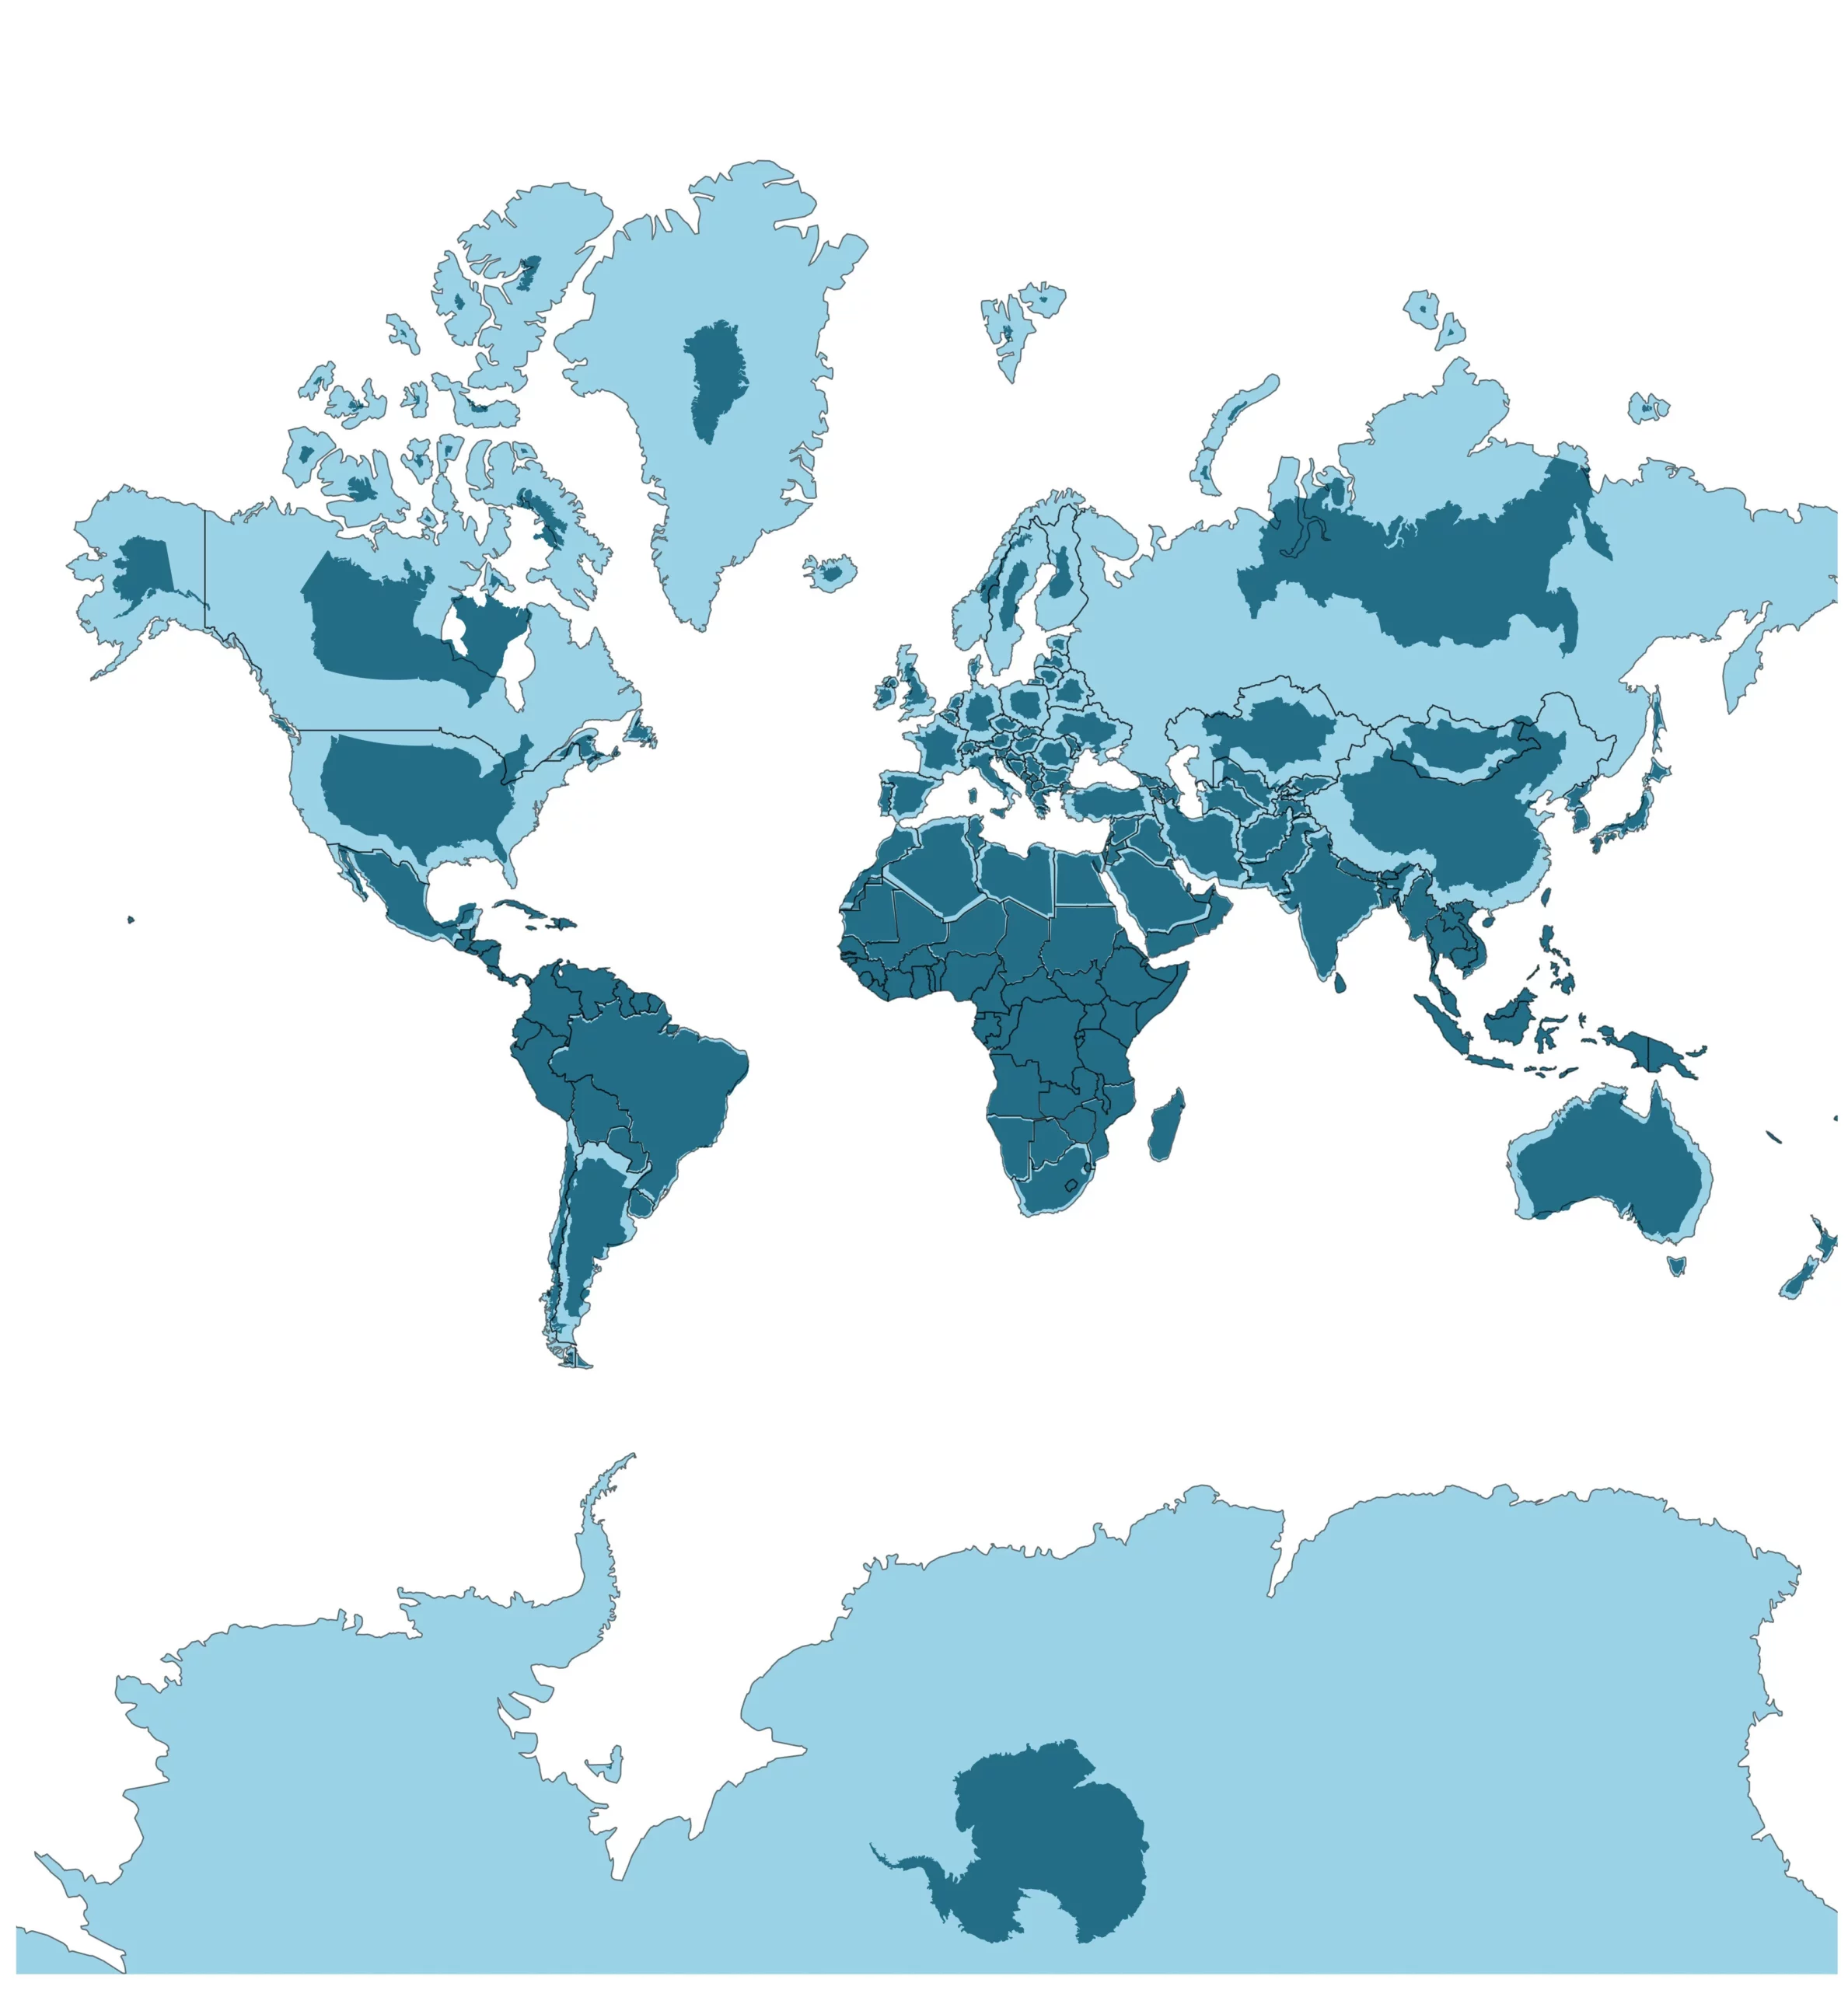 You are currently viewing [L’histoire en cartes] Les pays du monde à leur taille réelle